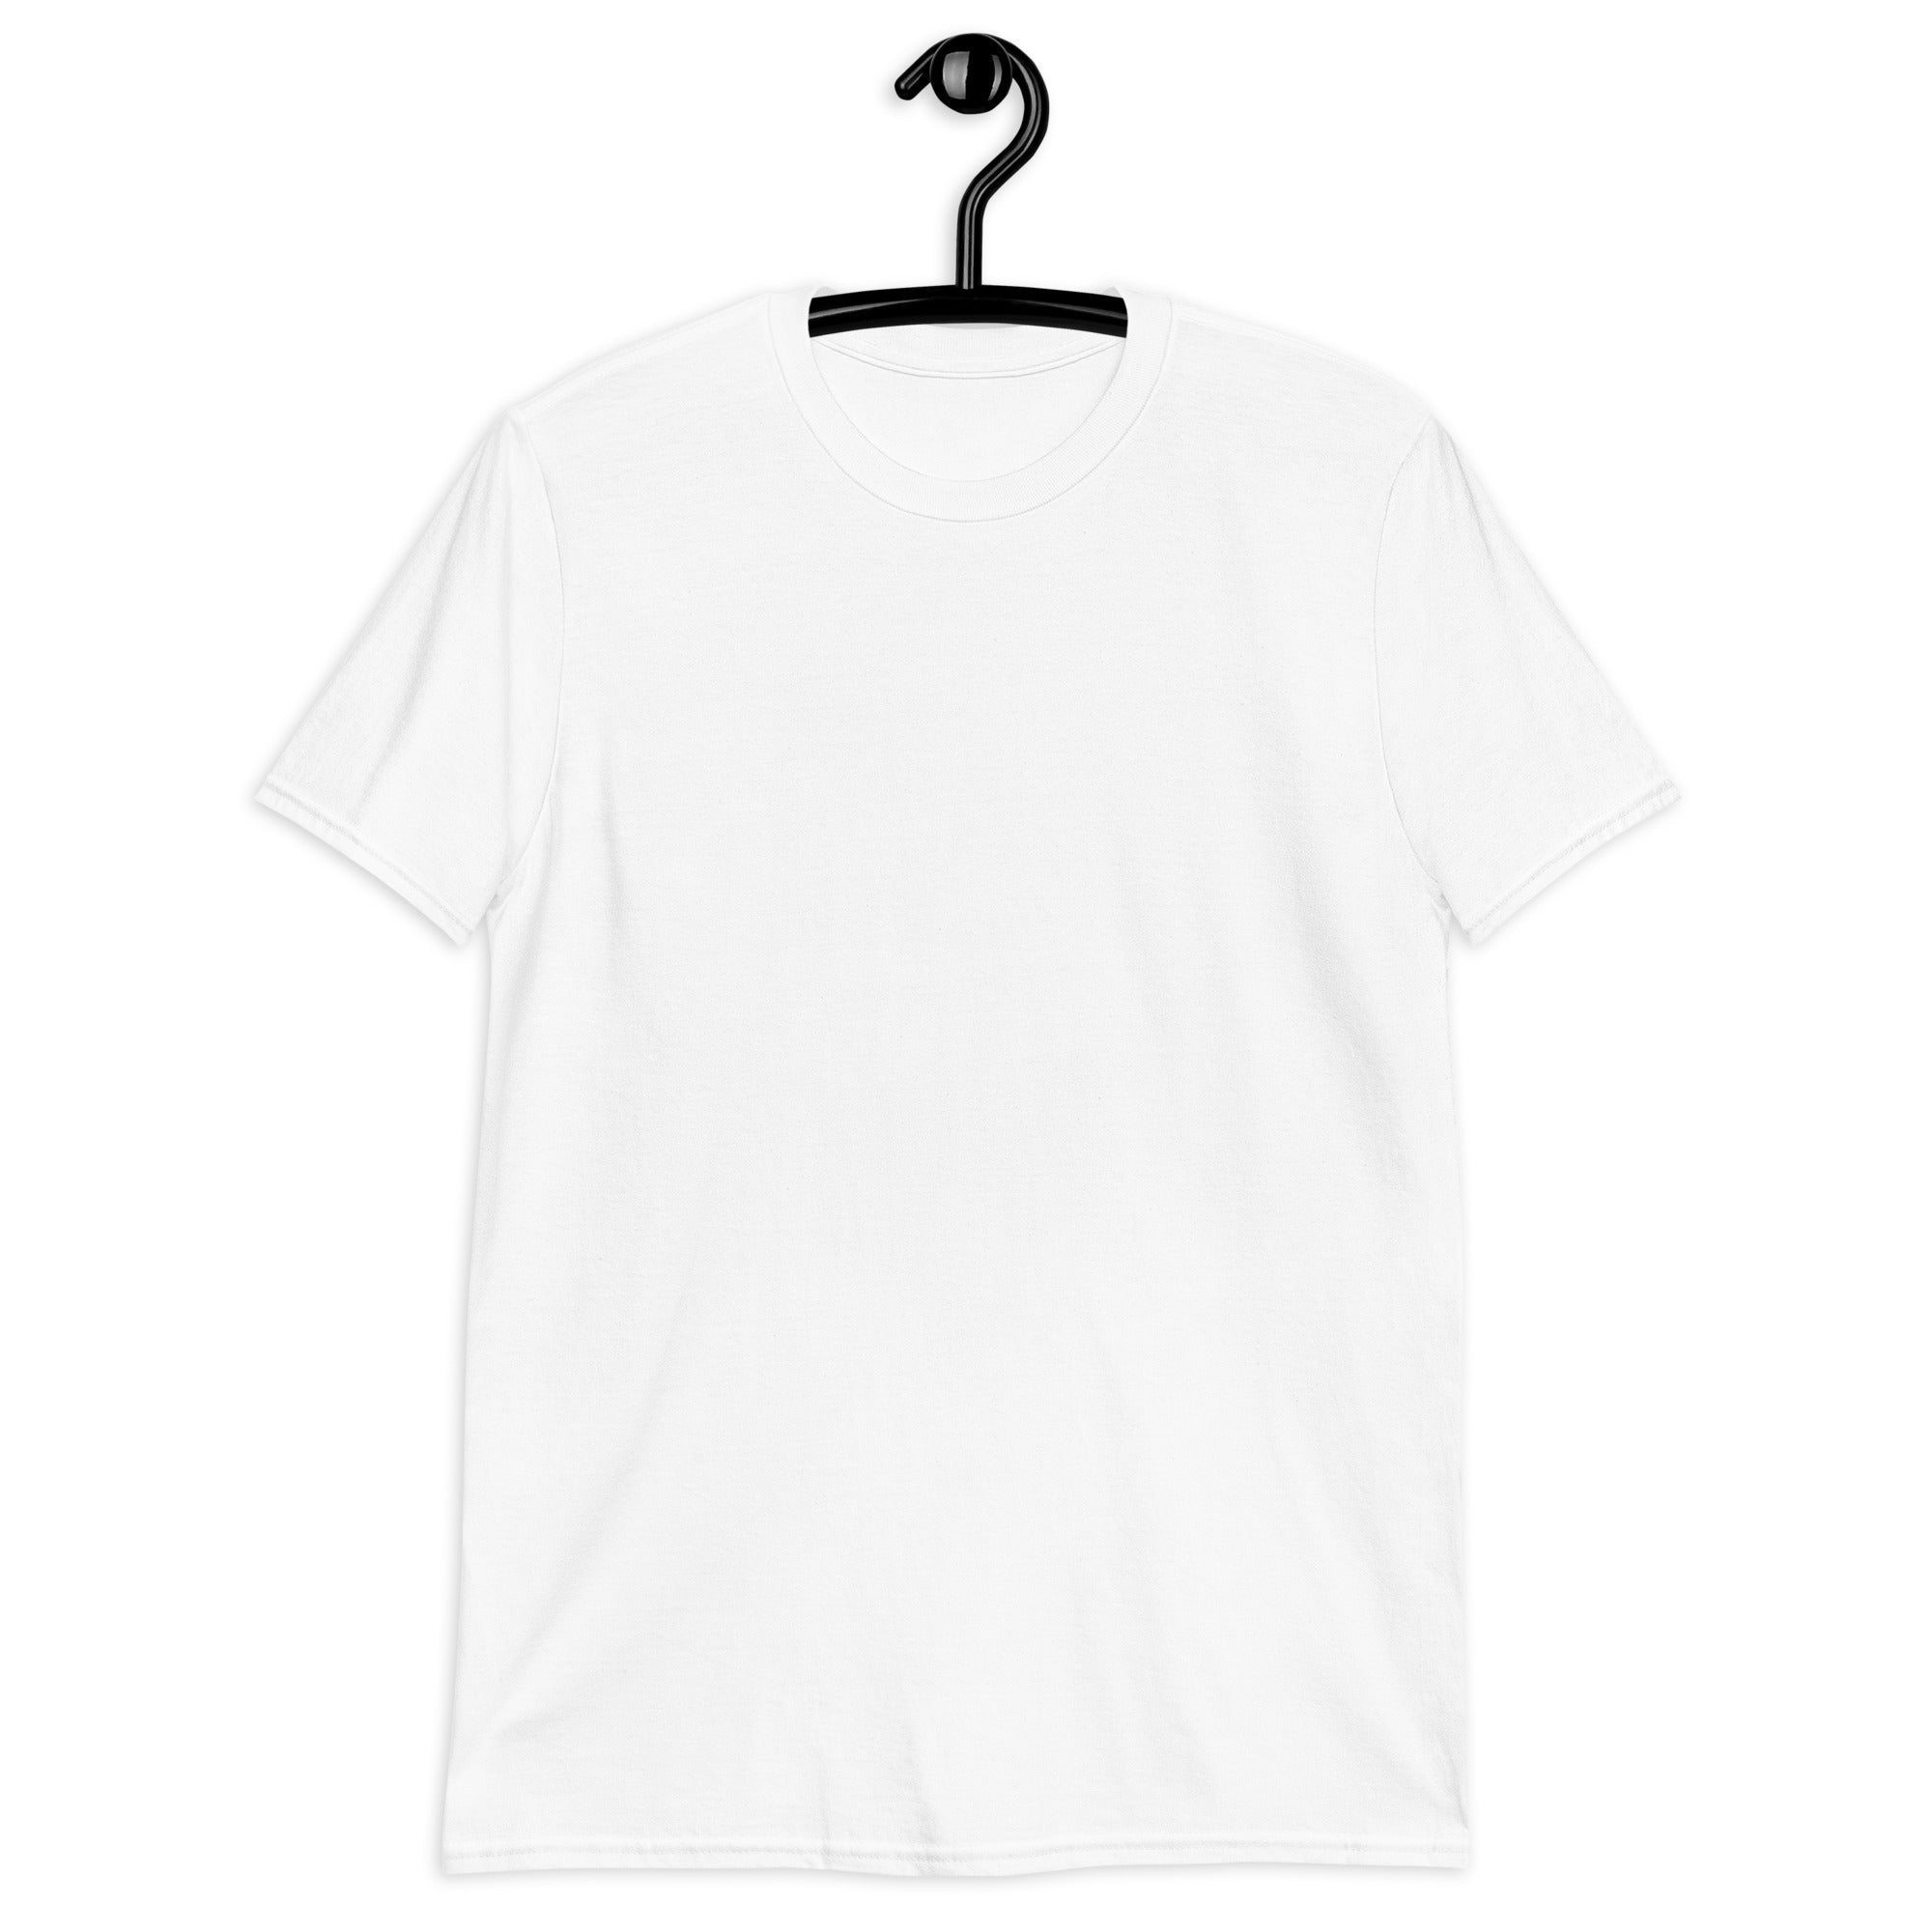 Short-Sleeve Unisex T-Shirt | Yeet